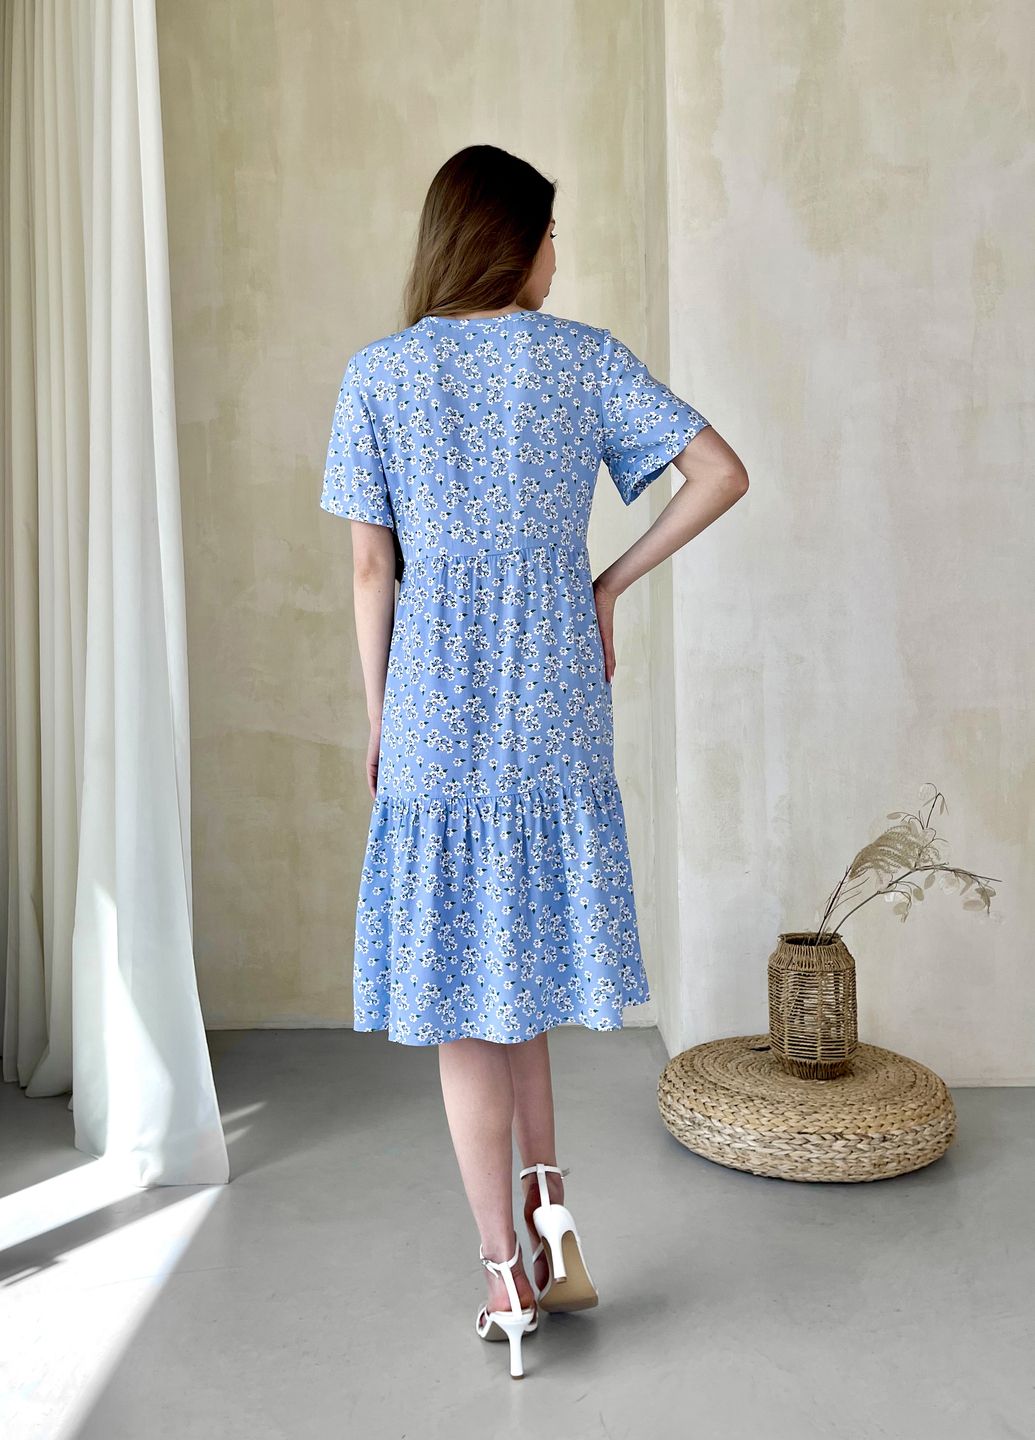 Купить Женское платье до колена с цветочным принтом и коротким рукавом голубое Merlini Ферро 700000262, размер 46-48 (L-XL) в интернет-магазине